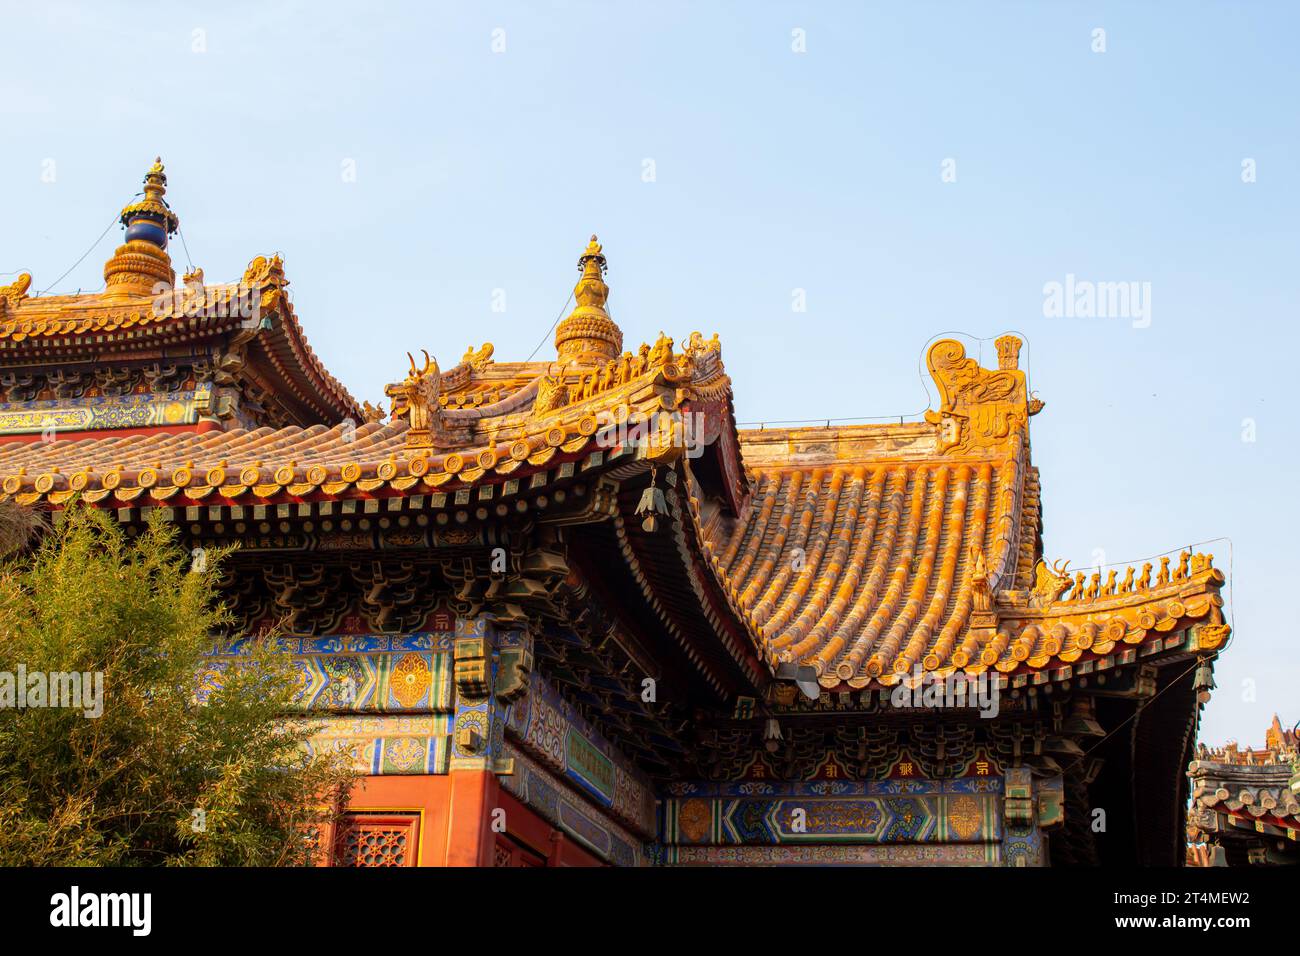 Gros plan sur les détails du toit de Yonghegong Lamasery, Yonghe Lamasery est le plus grand temple bouddhiste tibétain lama à Pékin, il a été construit en 1694. Banque D'Images